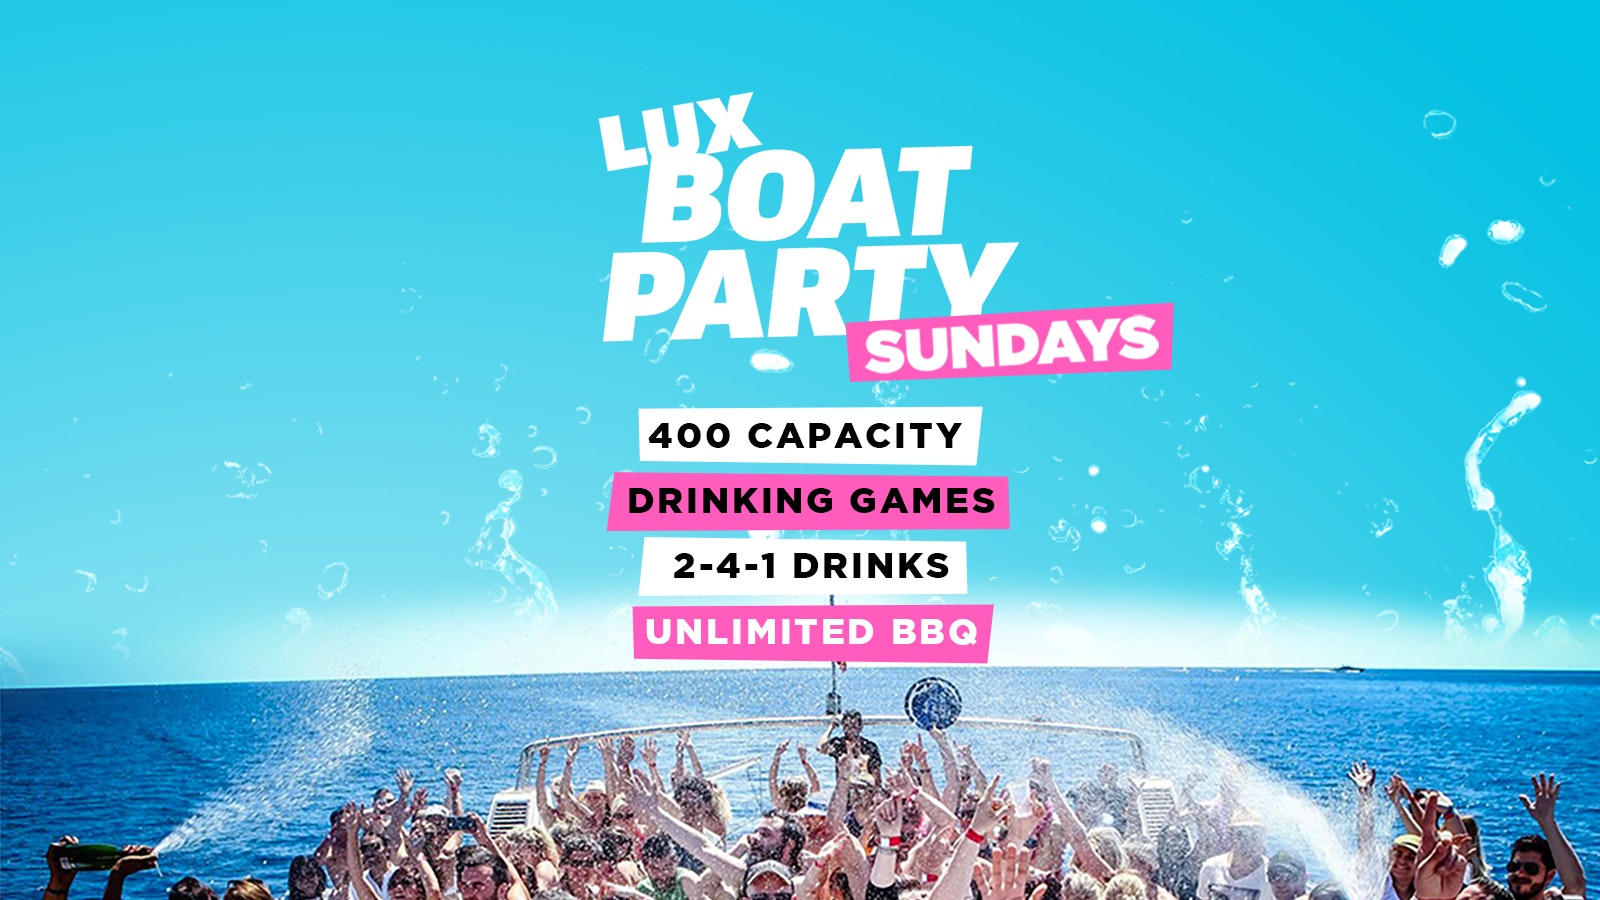 Malia Lux Boat Party